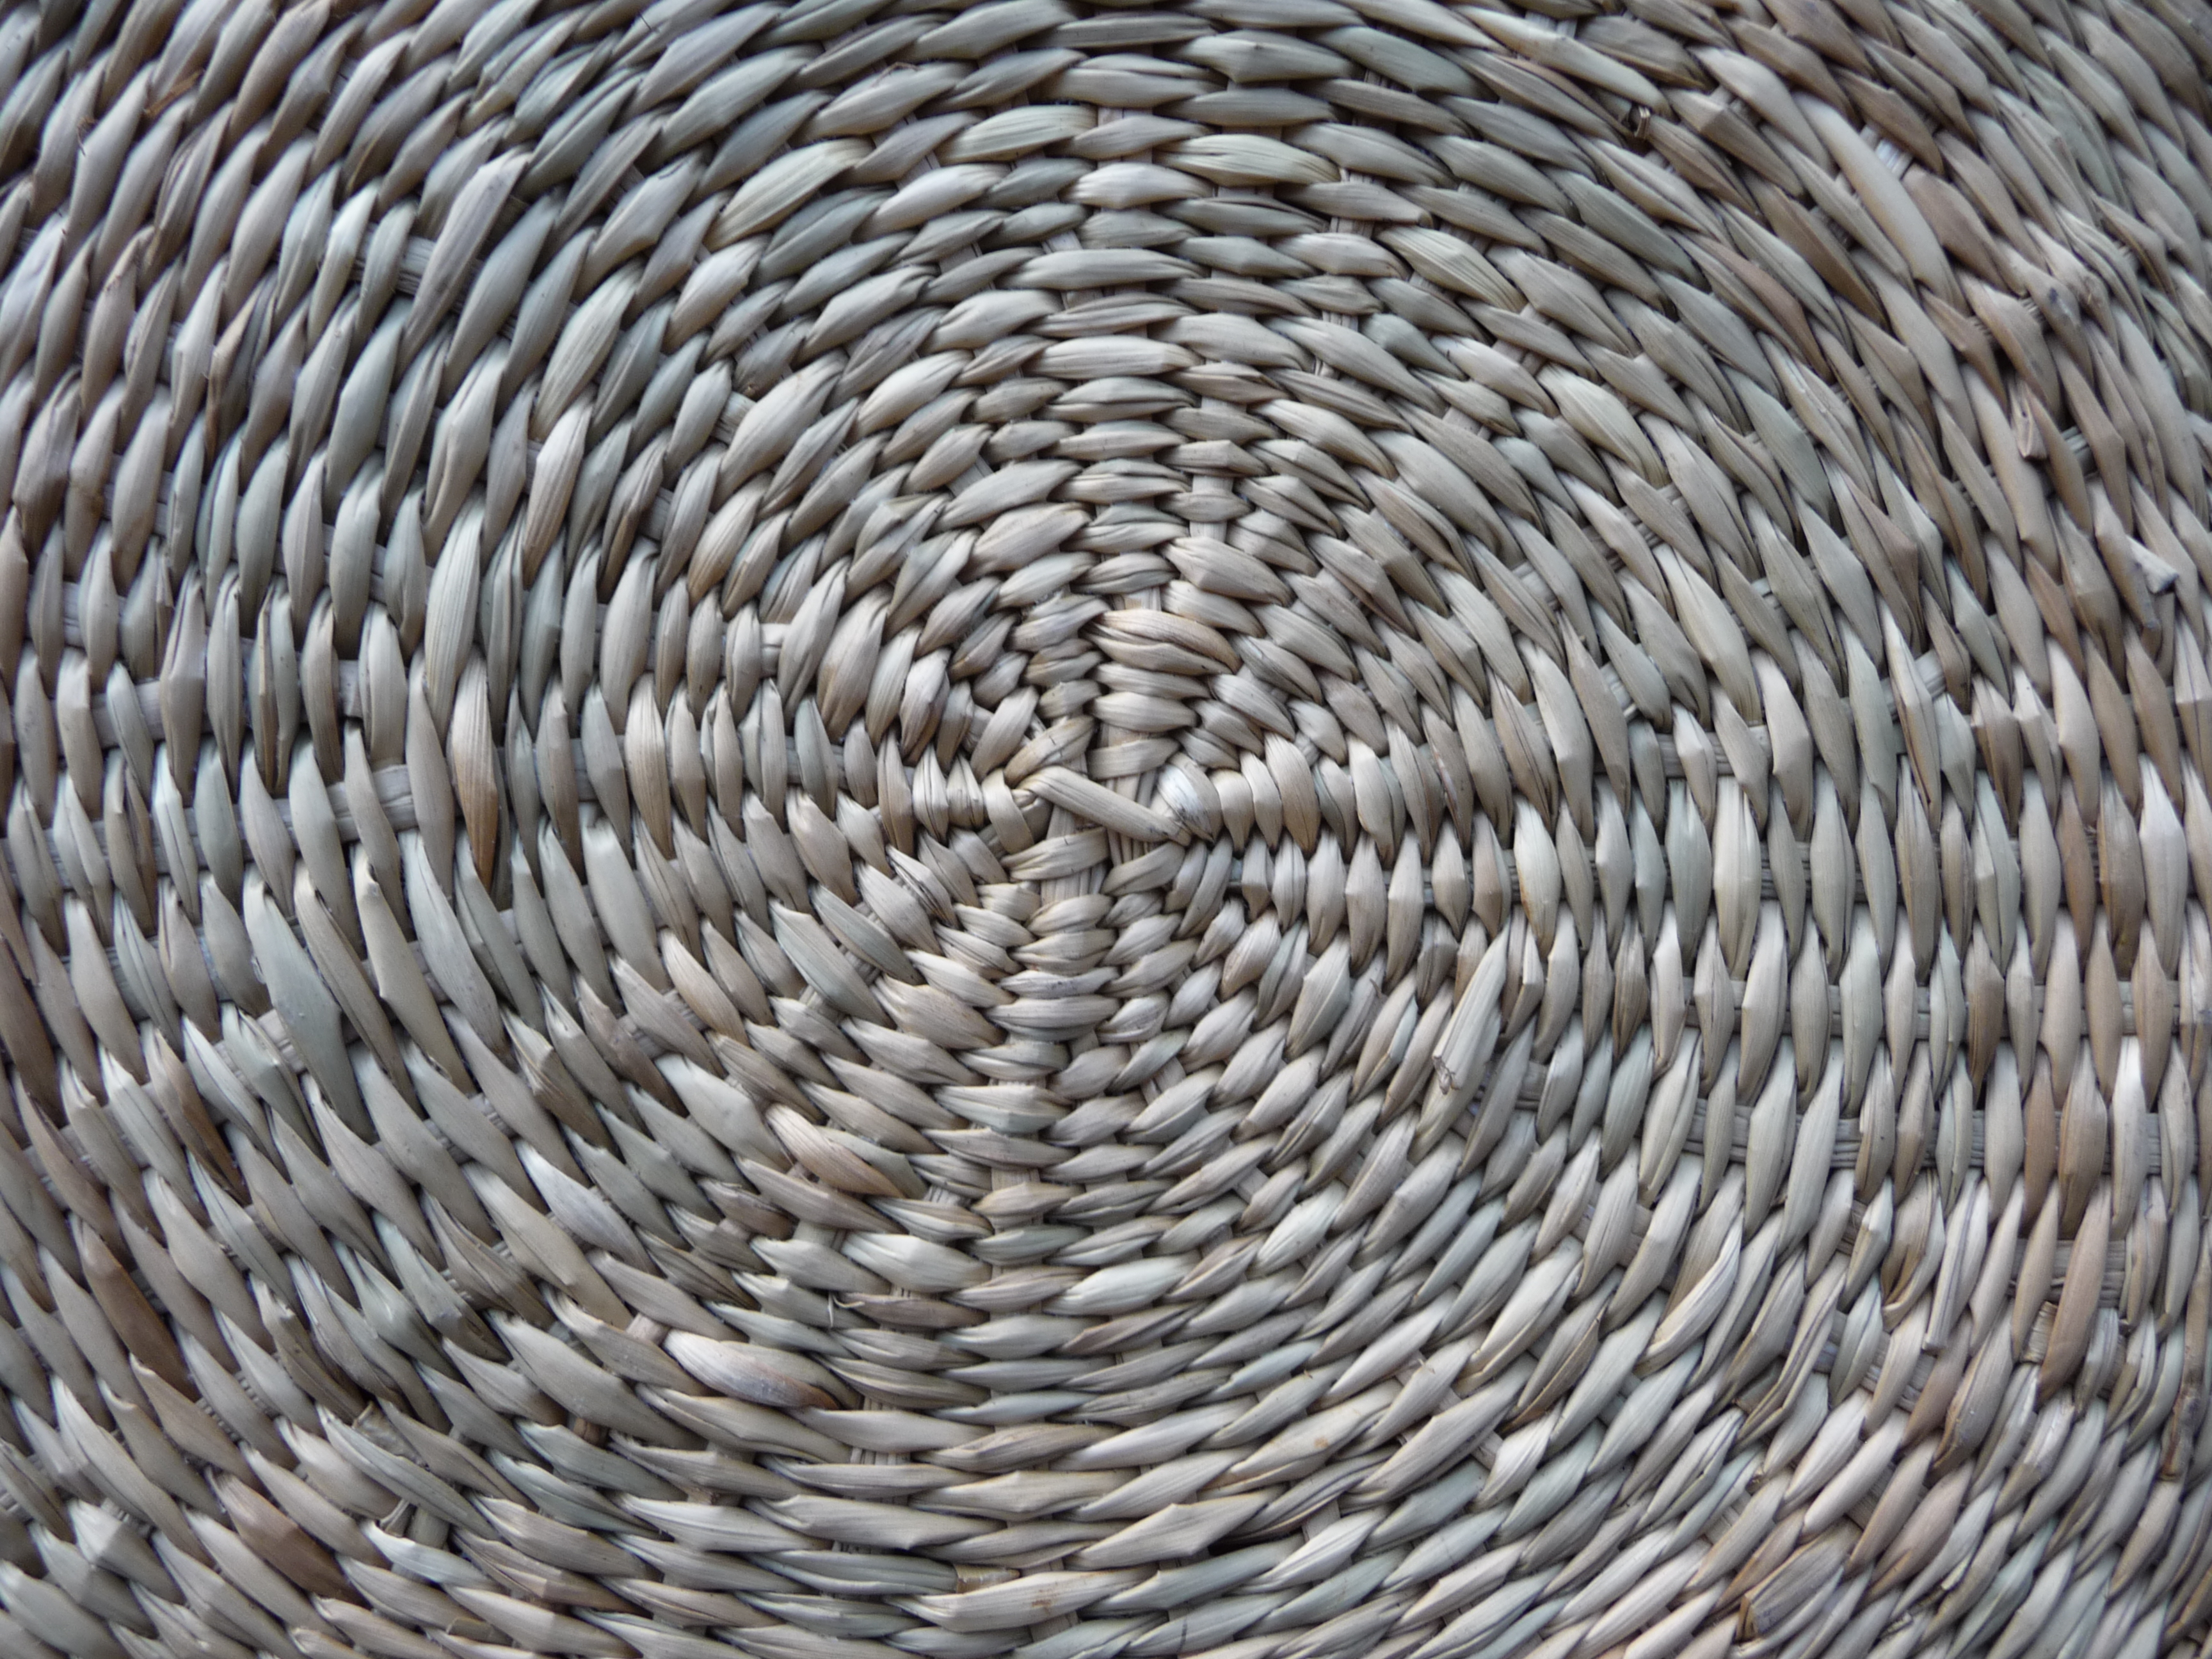 Textura (cestería en cuadrado)